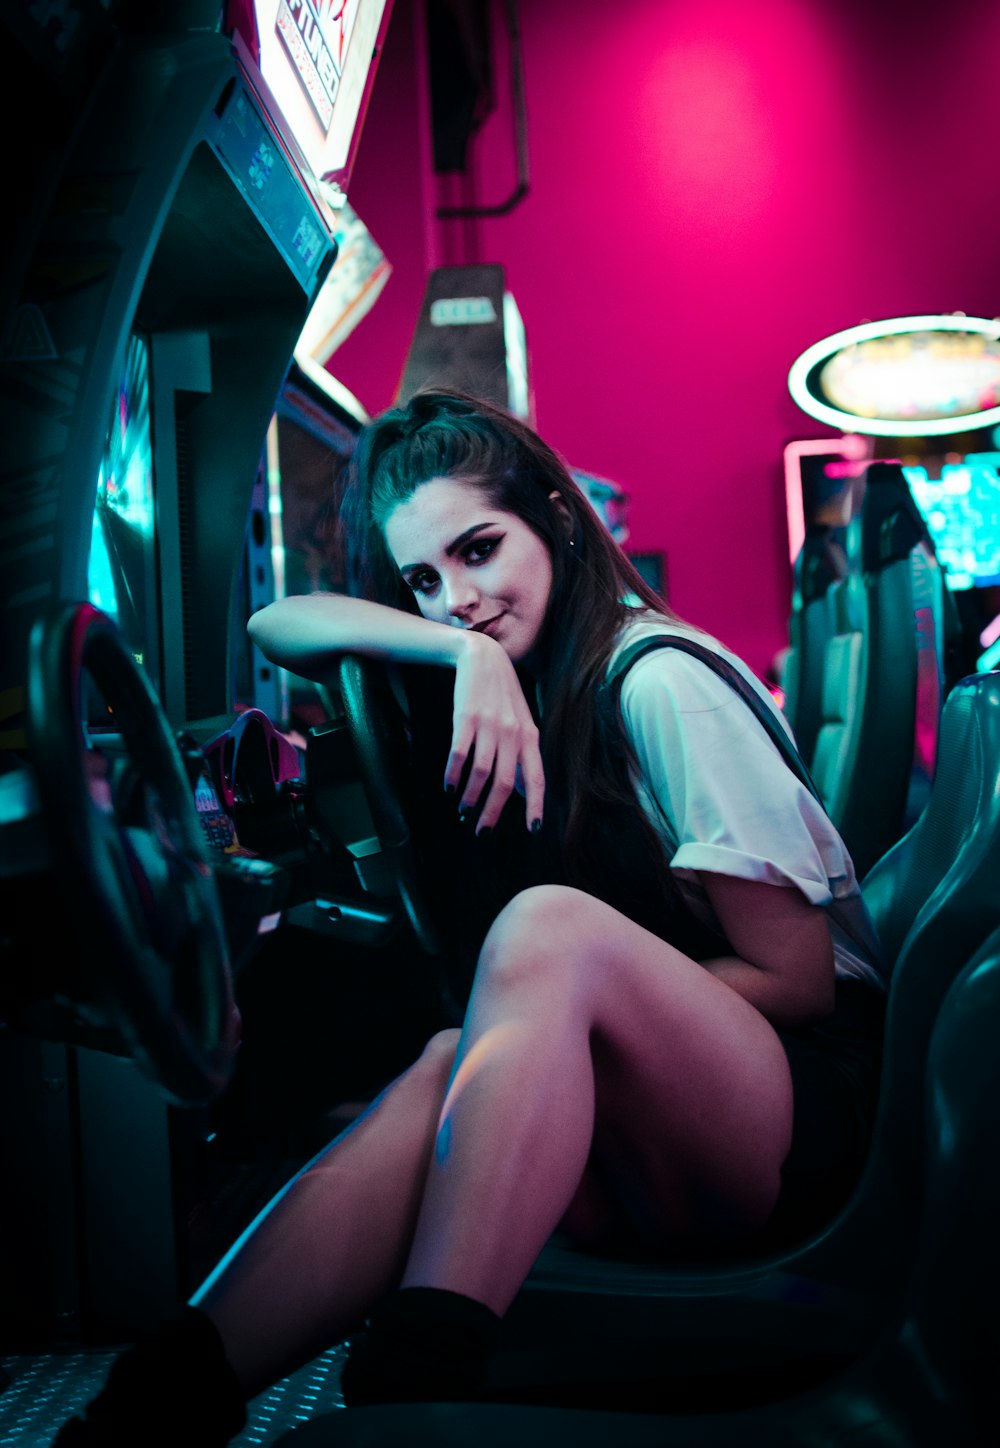 woman sitting on car arcade machine